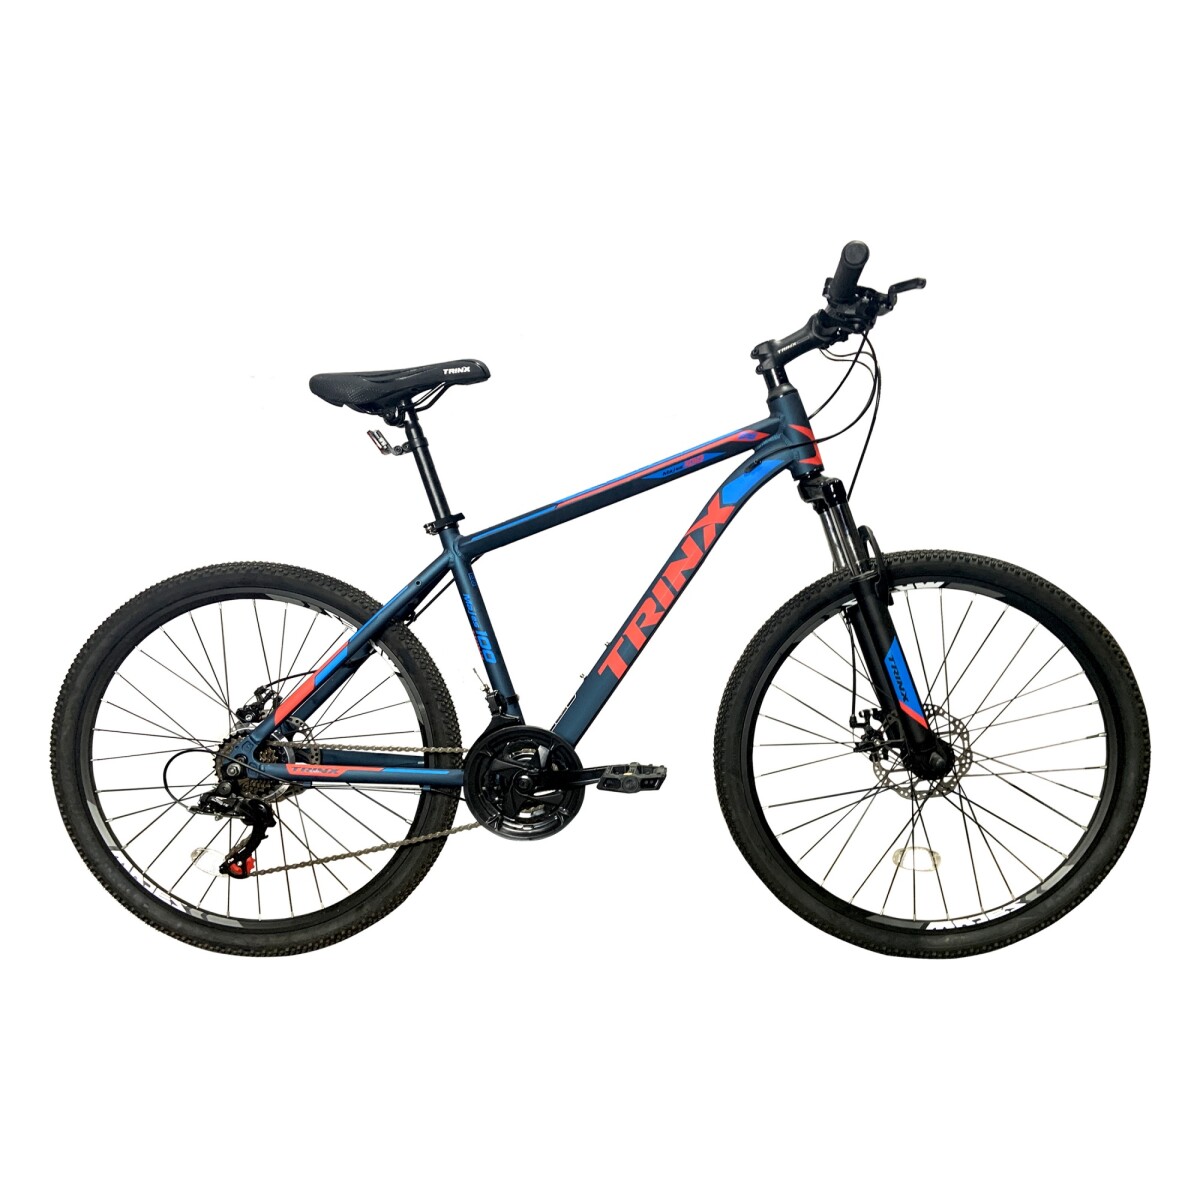 BICICLETA TRINX M100 CYAN/AZUL/ROJO - Bicicleta Trinx M100 Cyan/azul/rojo 